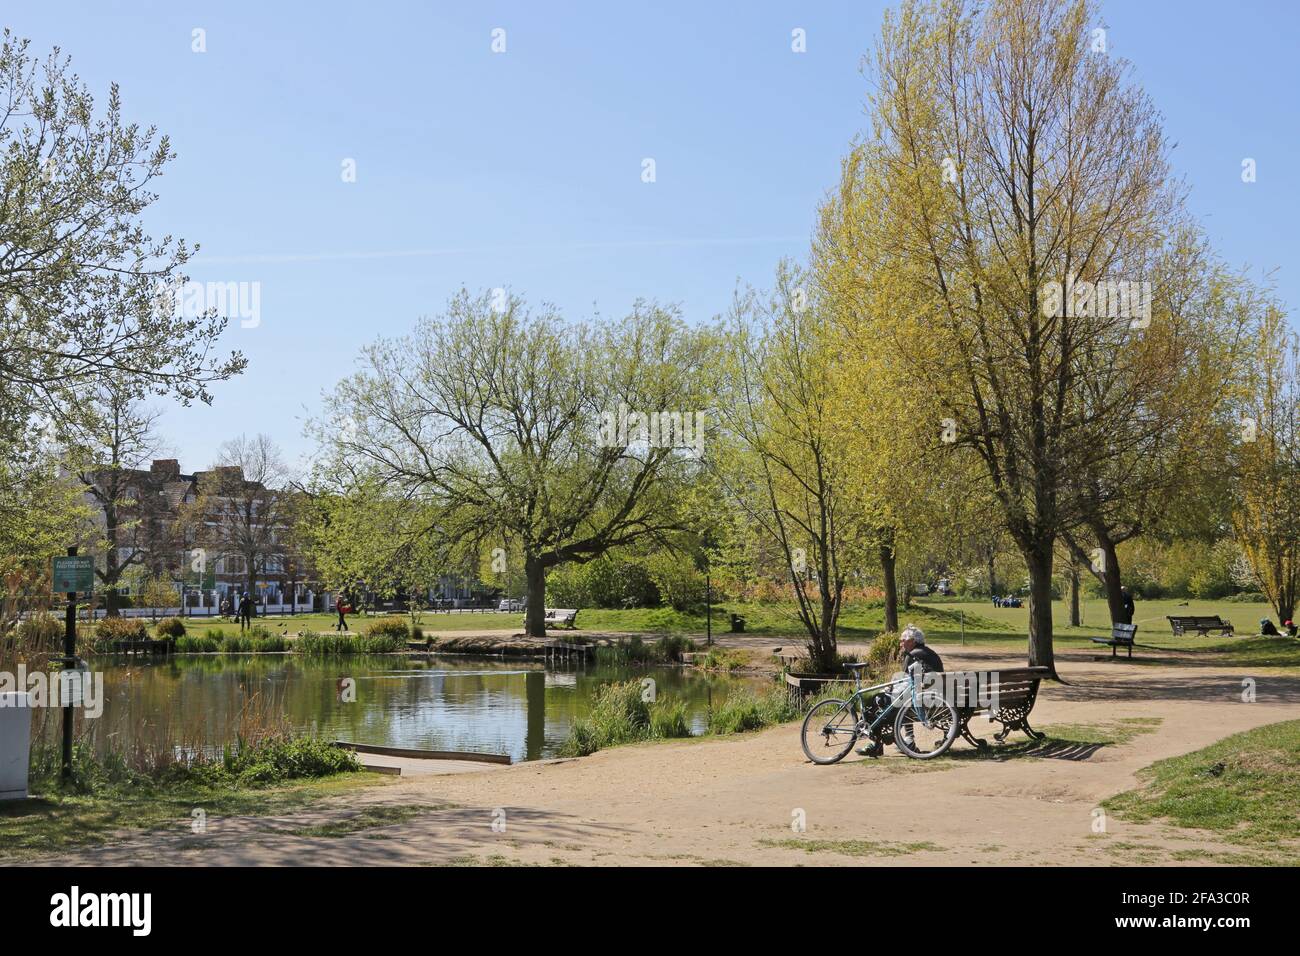 Un cycliste est assis sur un banc surplombant Eagle Pond sur Clapham Common, Londres. Soleil le jour du printemps. Banque D'Images